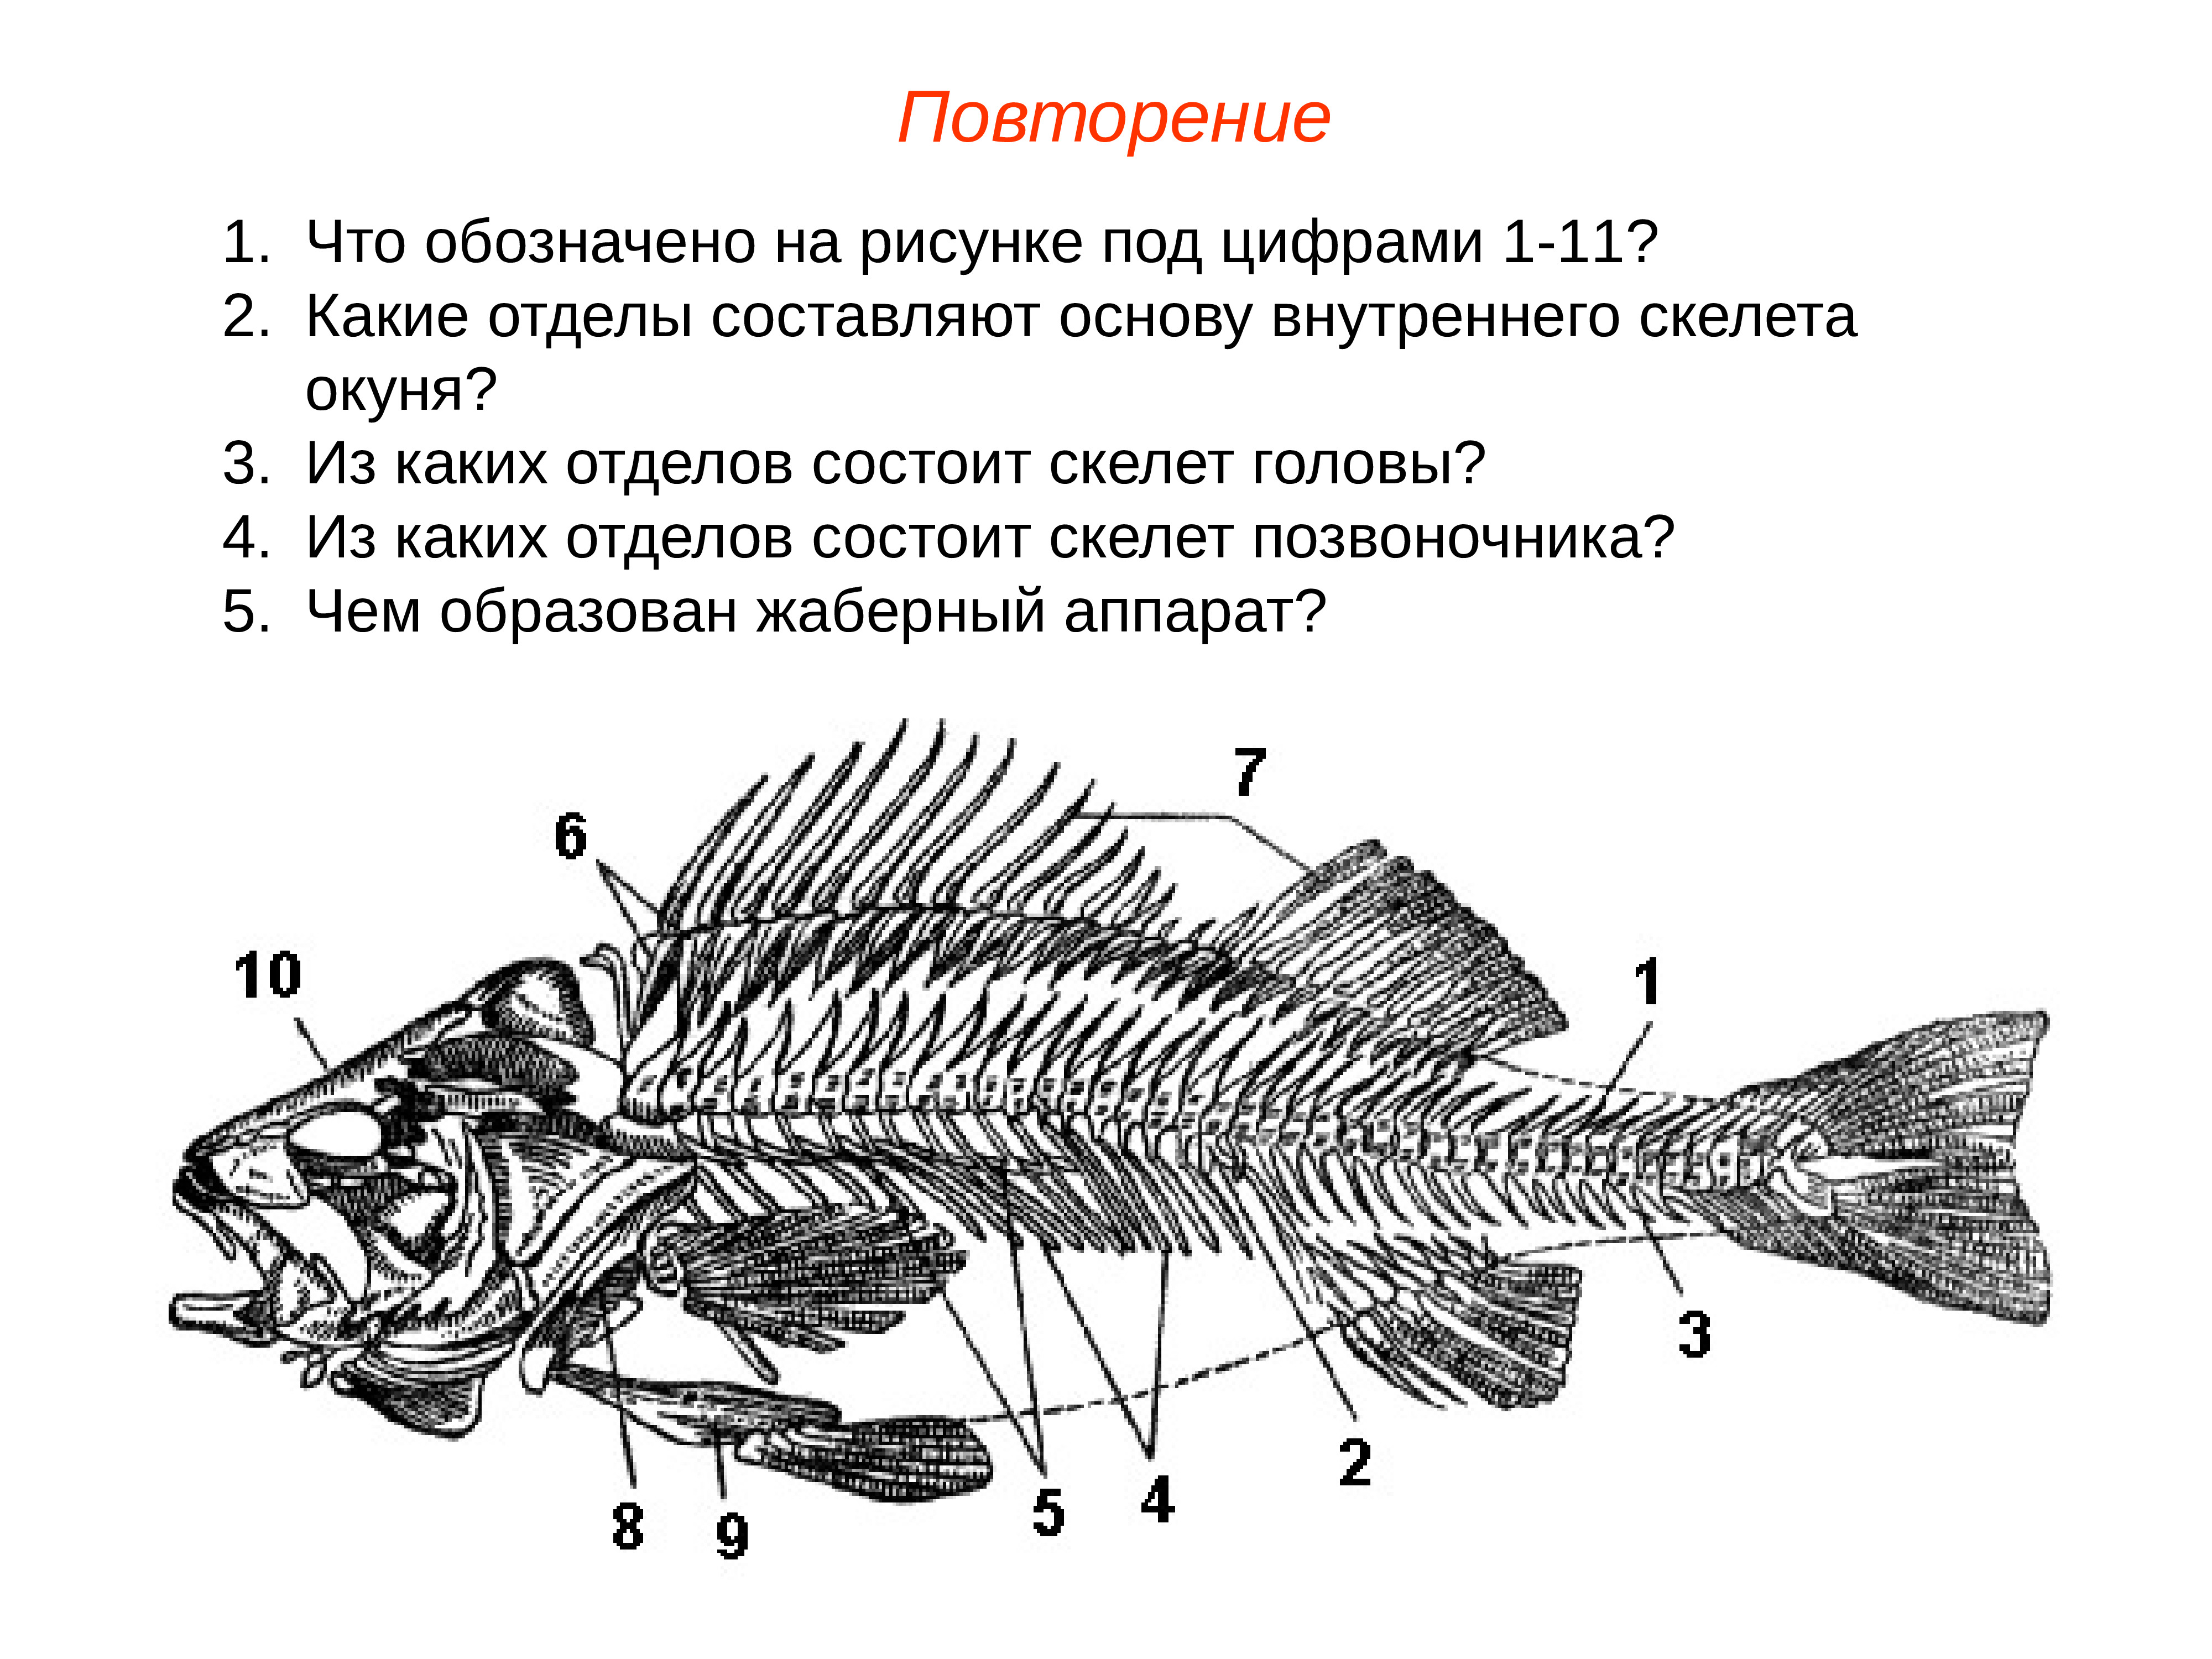 Внутренний скелет костной рыбы. Осевой скелет костистой рыбы. Строение скелета костистой рыбы. Скелет костной рыбы 7 класс биология. Строение позвоночника костистой рыбы.